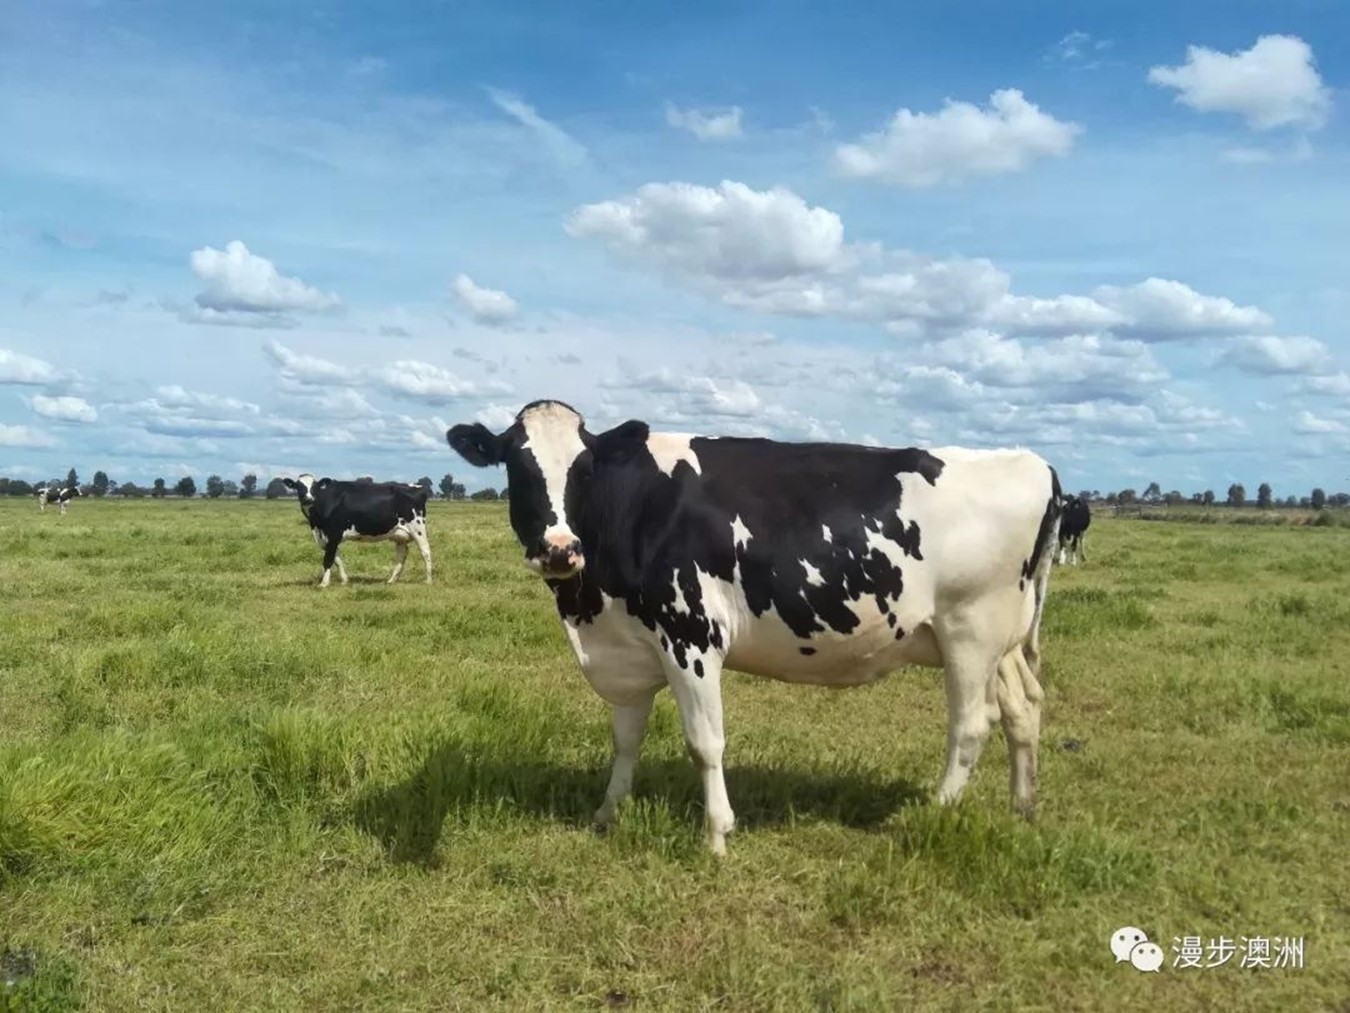 奶牛场之盯着牛犊子吃喝拉撒的日常